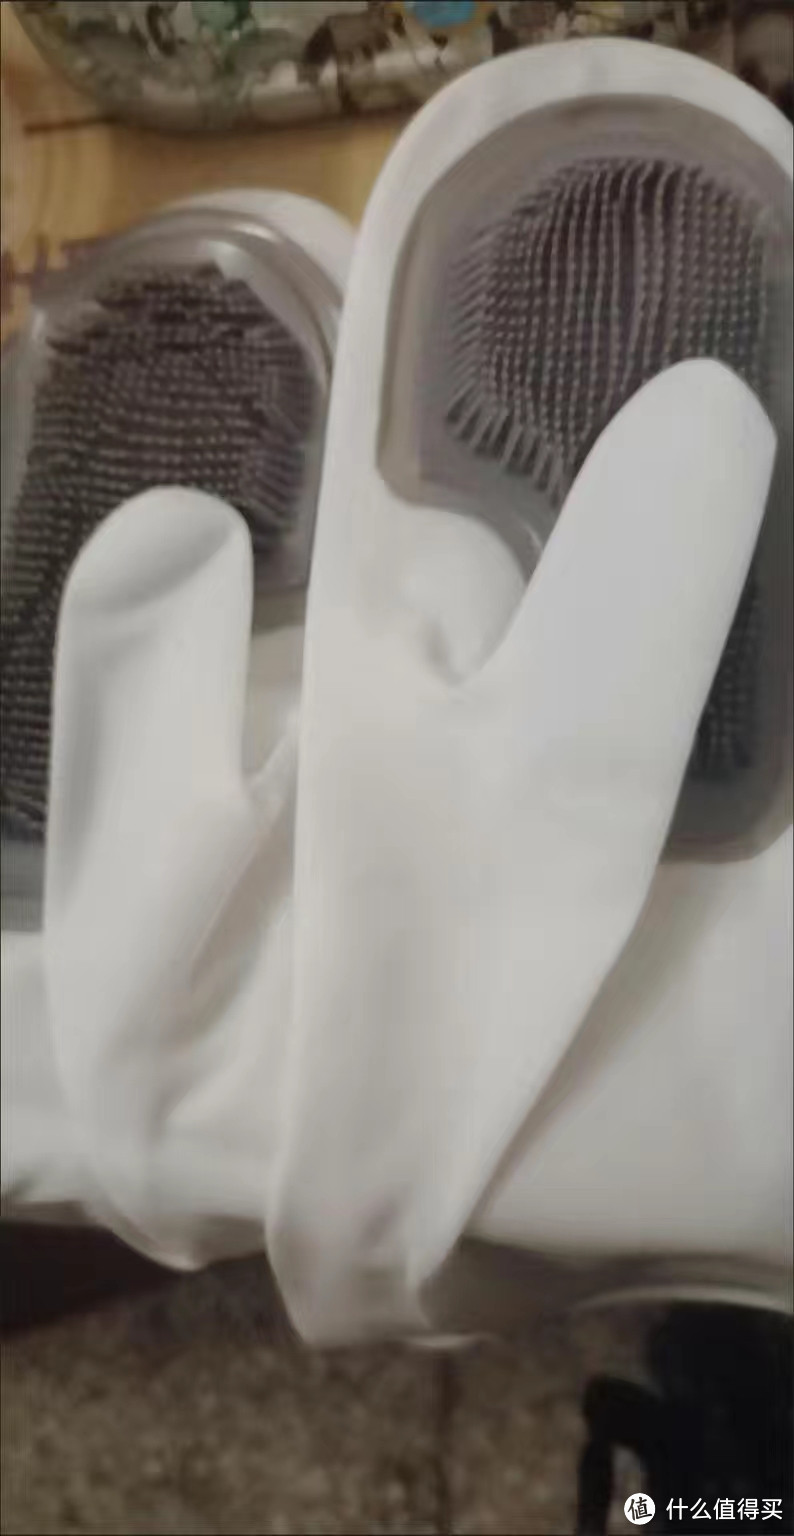 洗碗用的硅胶手套，带刷毛。